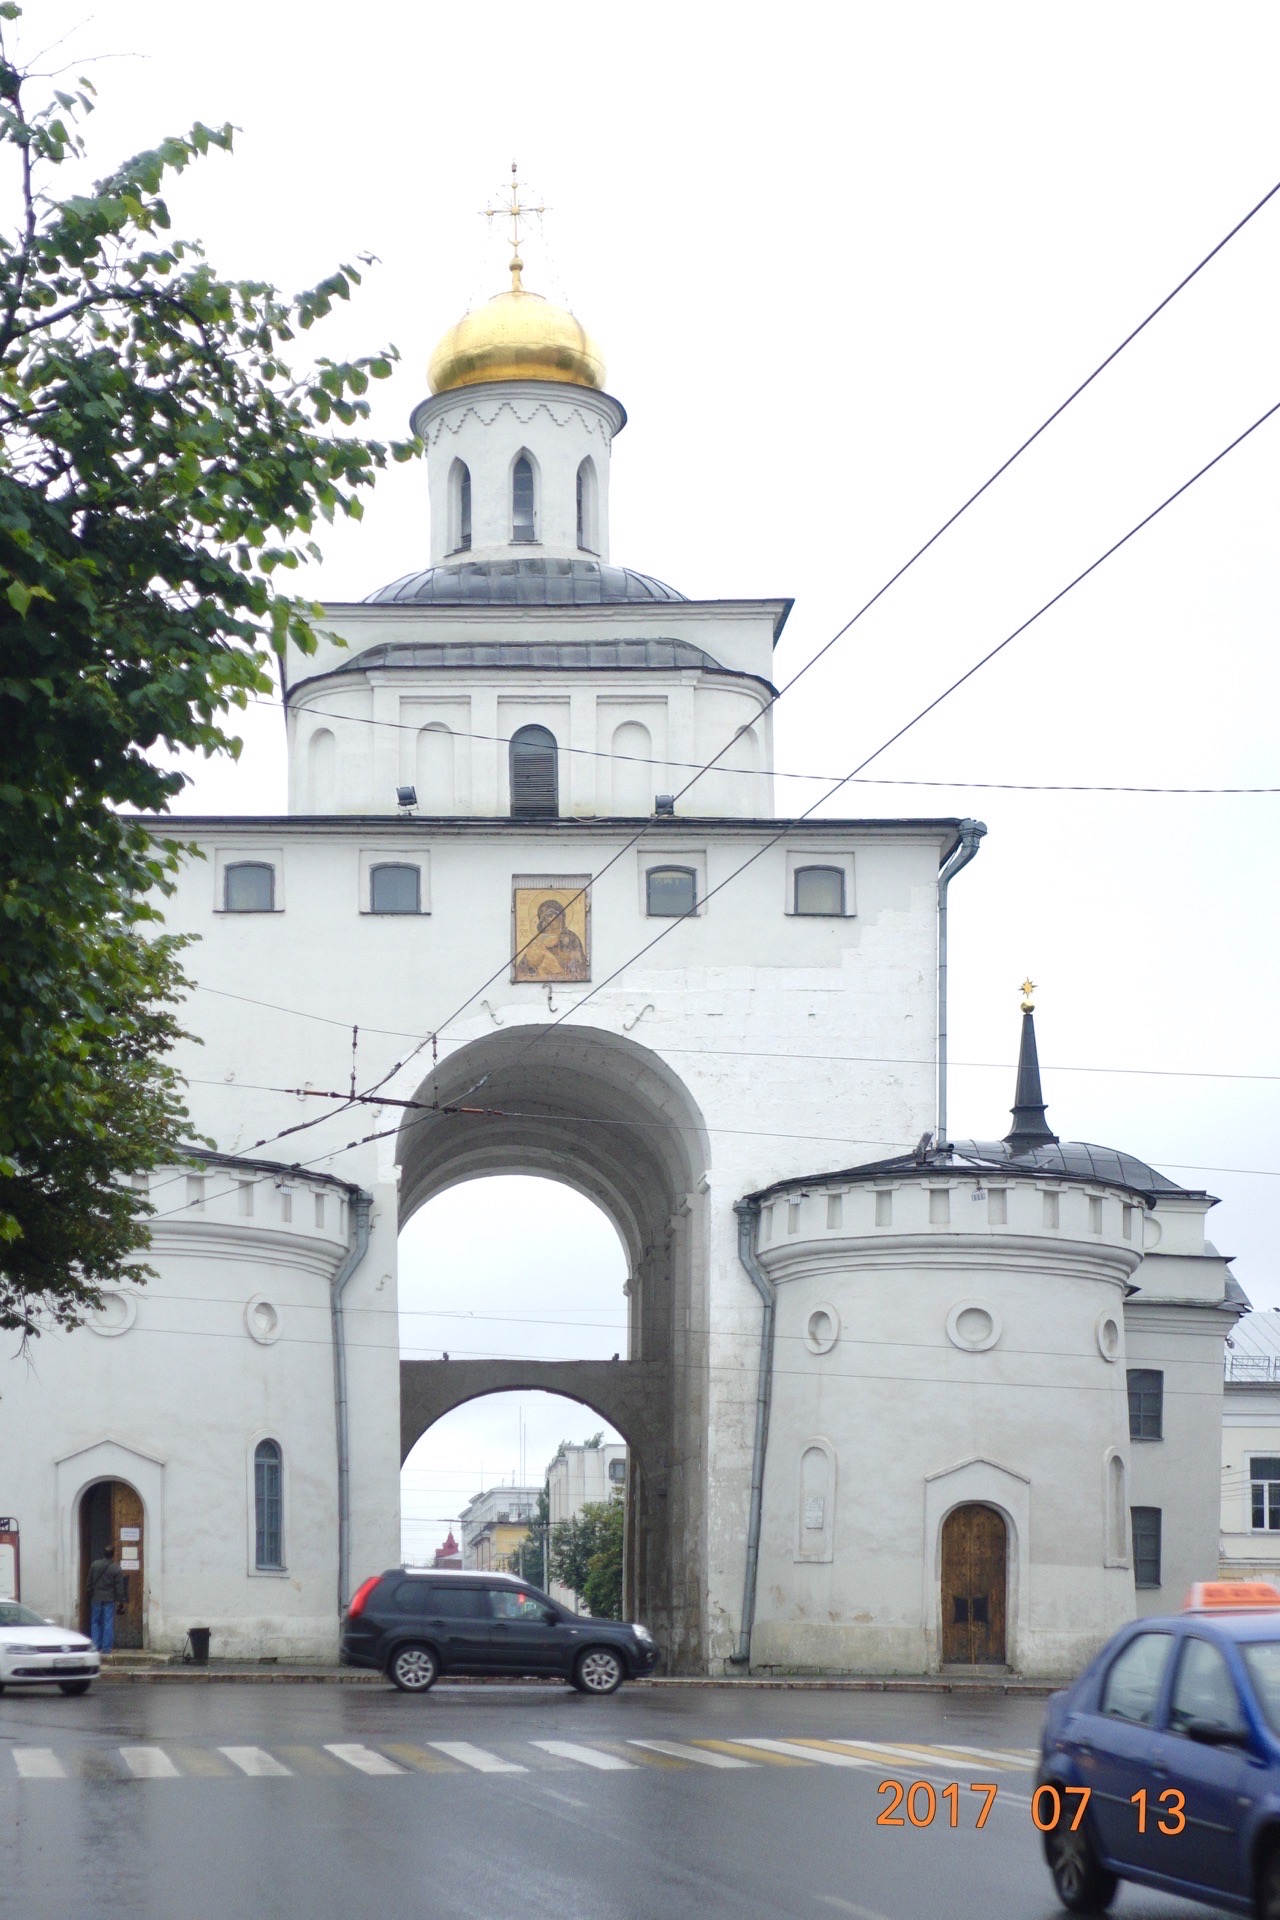 7月13日 游”莫斯科金环小镇”弗拉基米尔     这是一个比莫斯科还古老的城市，弗拉基米尔大公在此